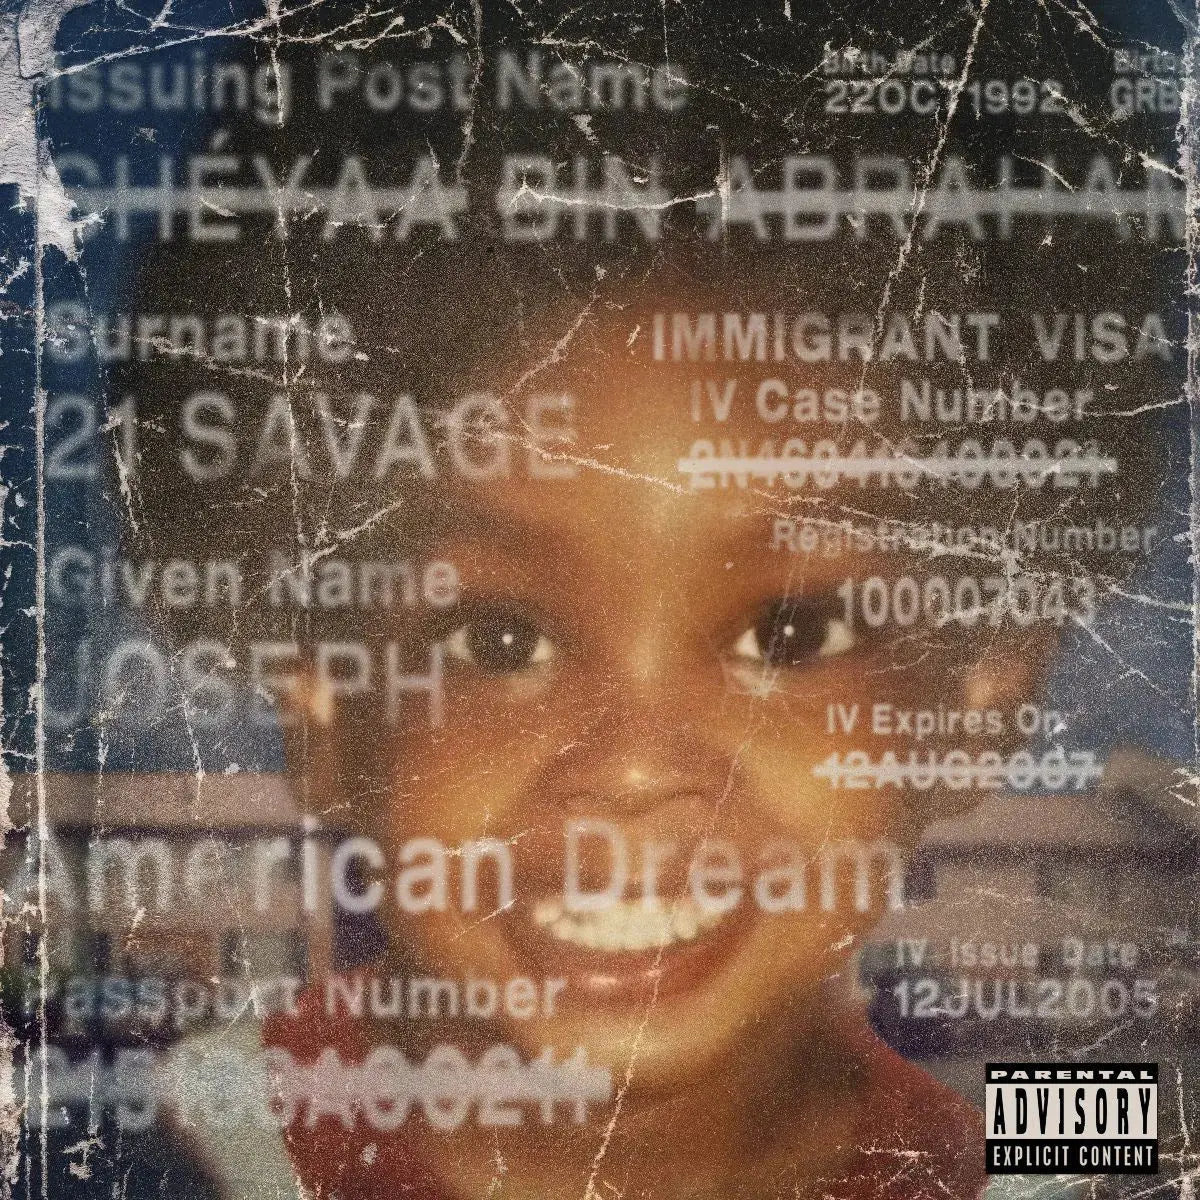 American Dream [Vinyle rouge explicite]